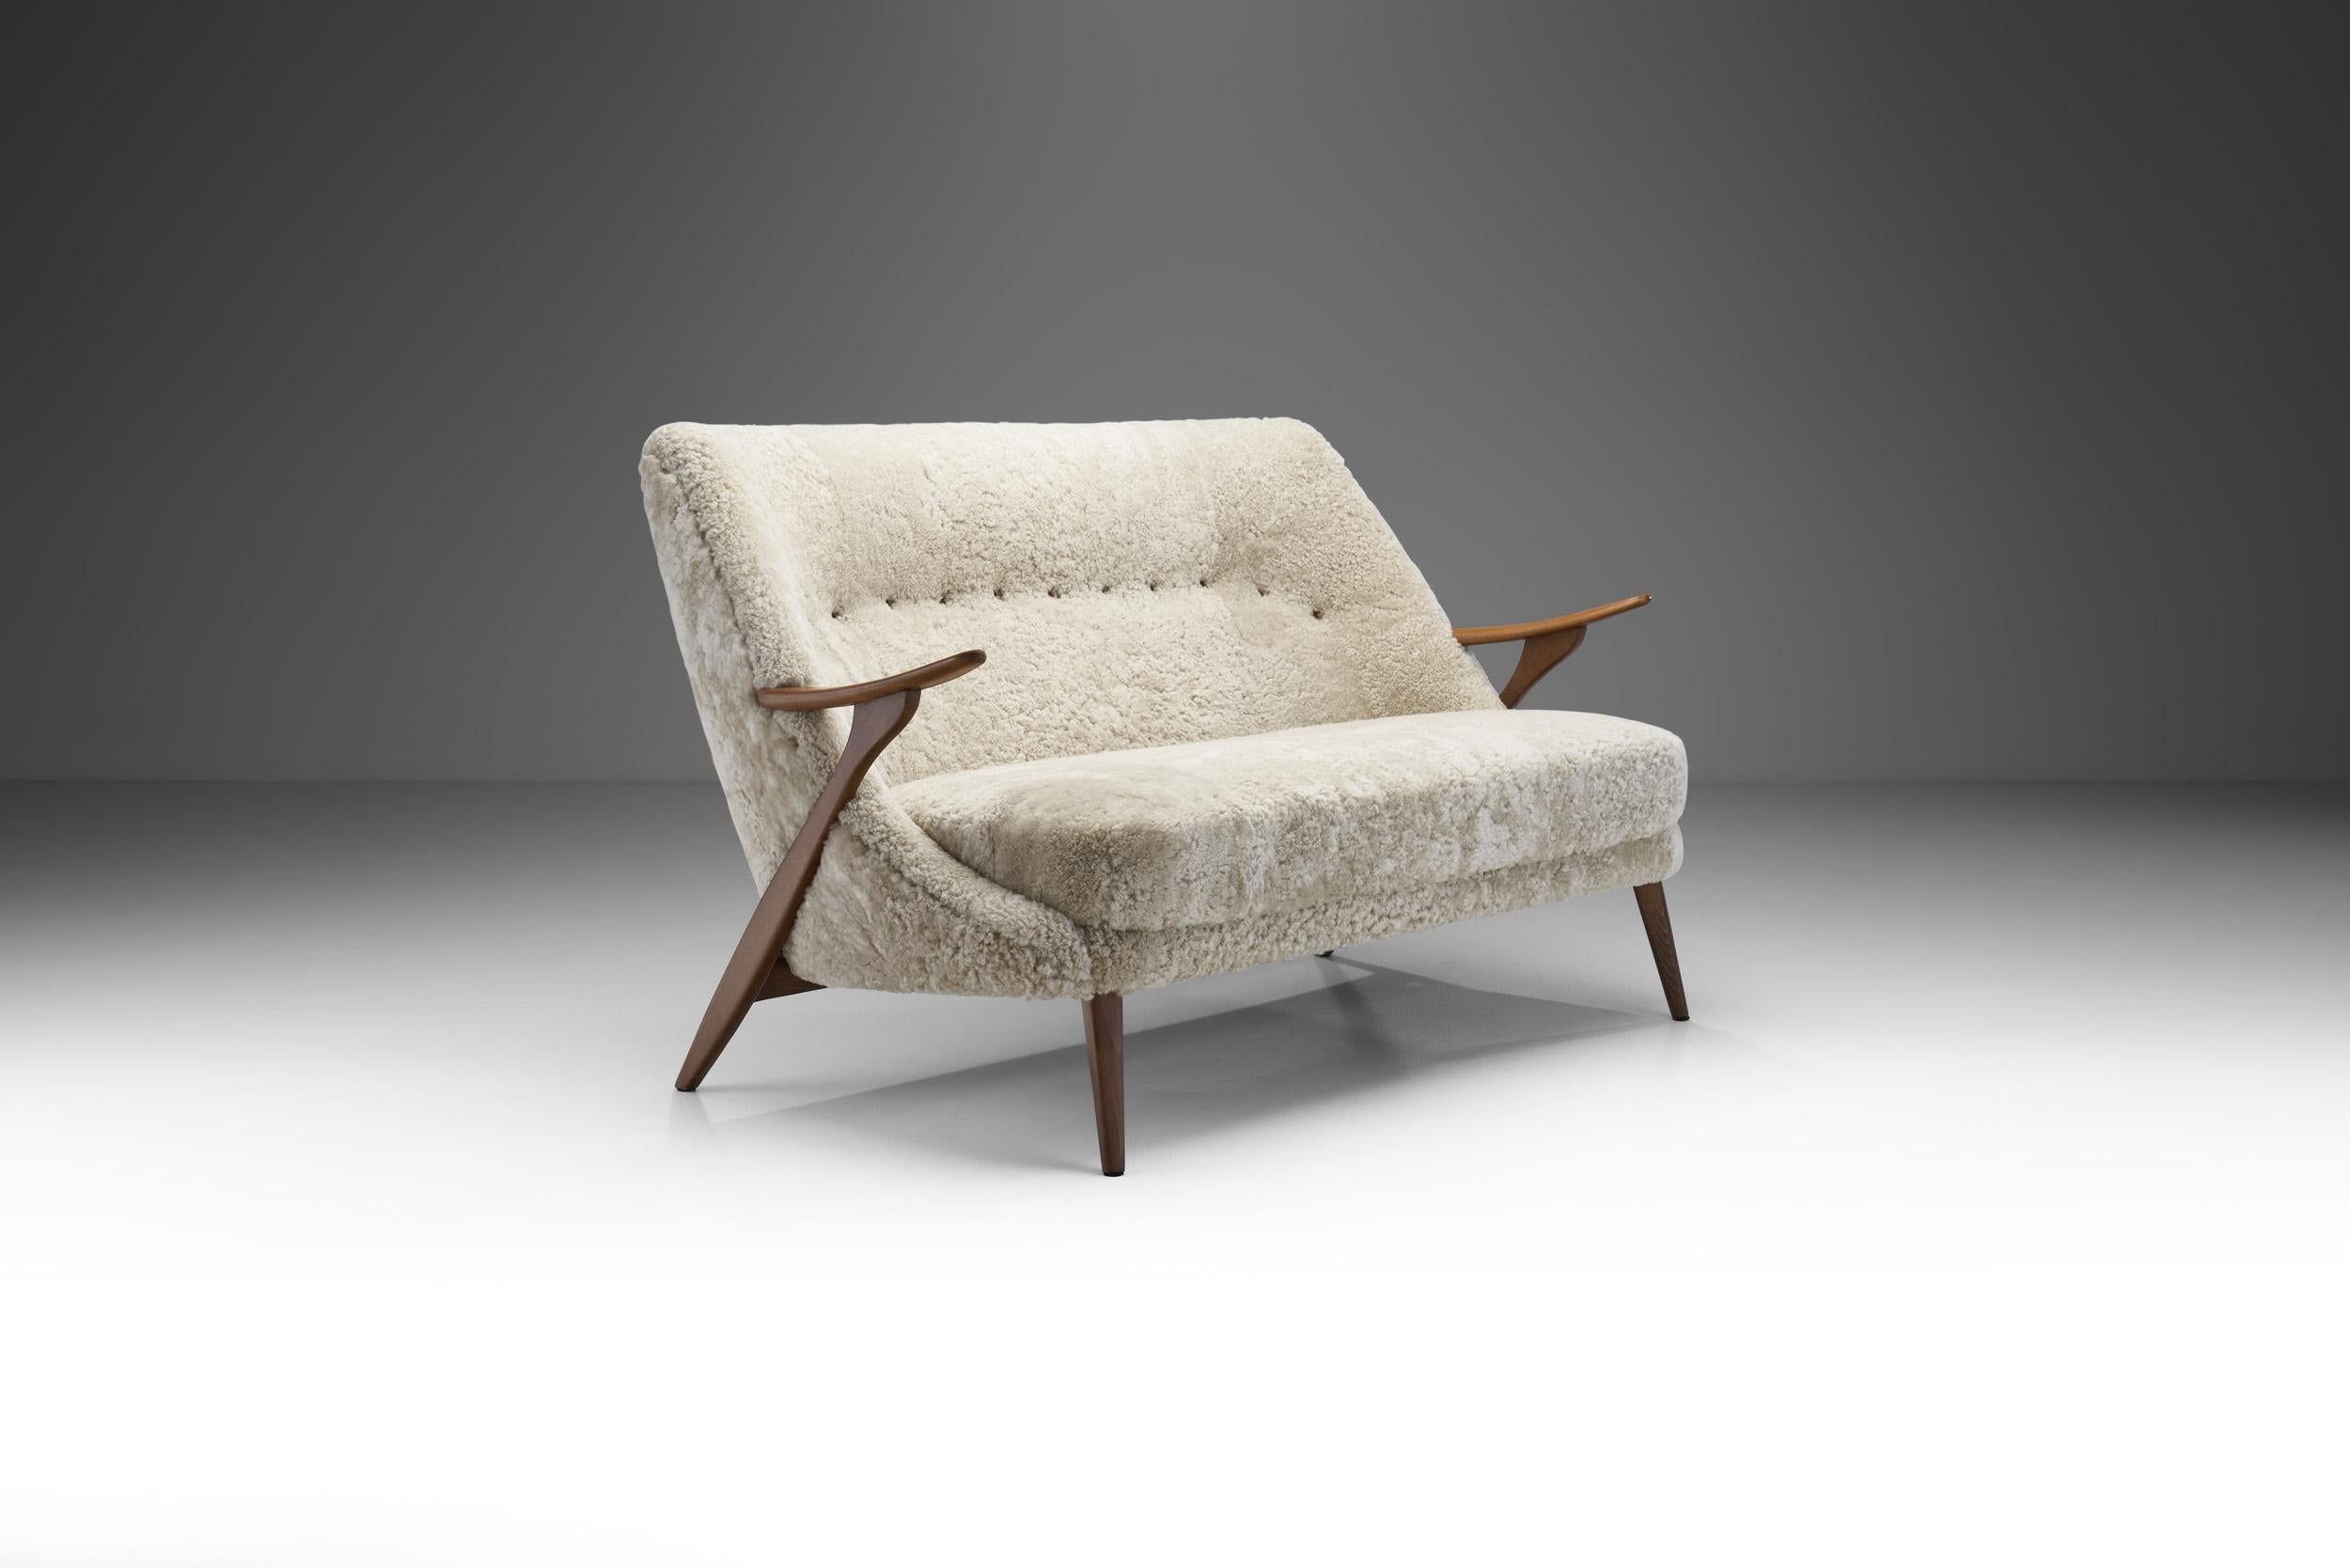 Dieses spektakuläre zweisitzige Sofa des schwedischen Designers Svante Skogh ist ein eher seltenes Beispiel aus dem Repertoire des Innenarchitekten und Möbeldesigners. Mit seiner kreativen und meisterhaft gearbeiteten Holzstruktur und dem